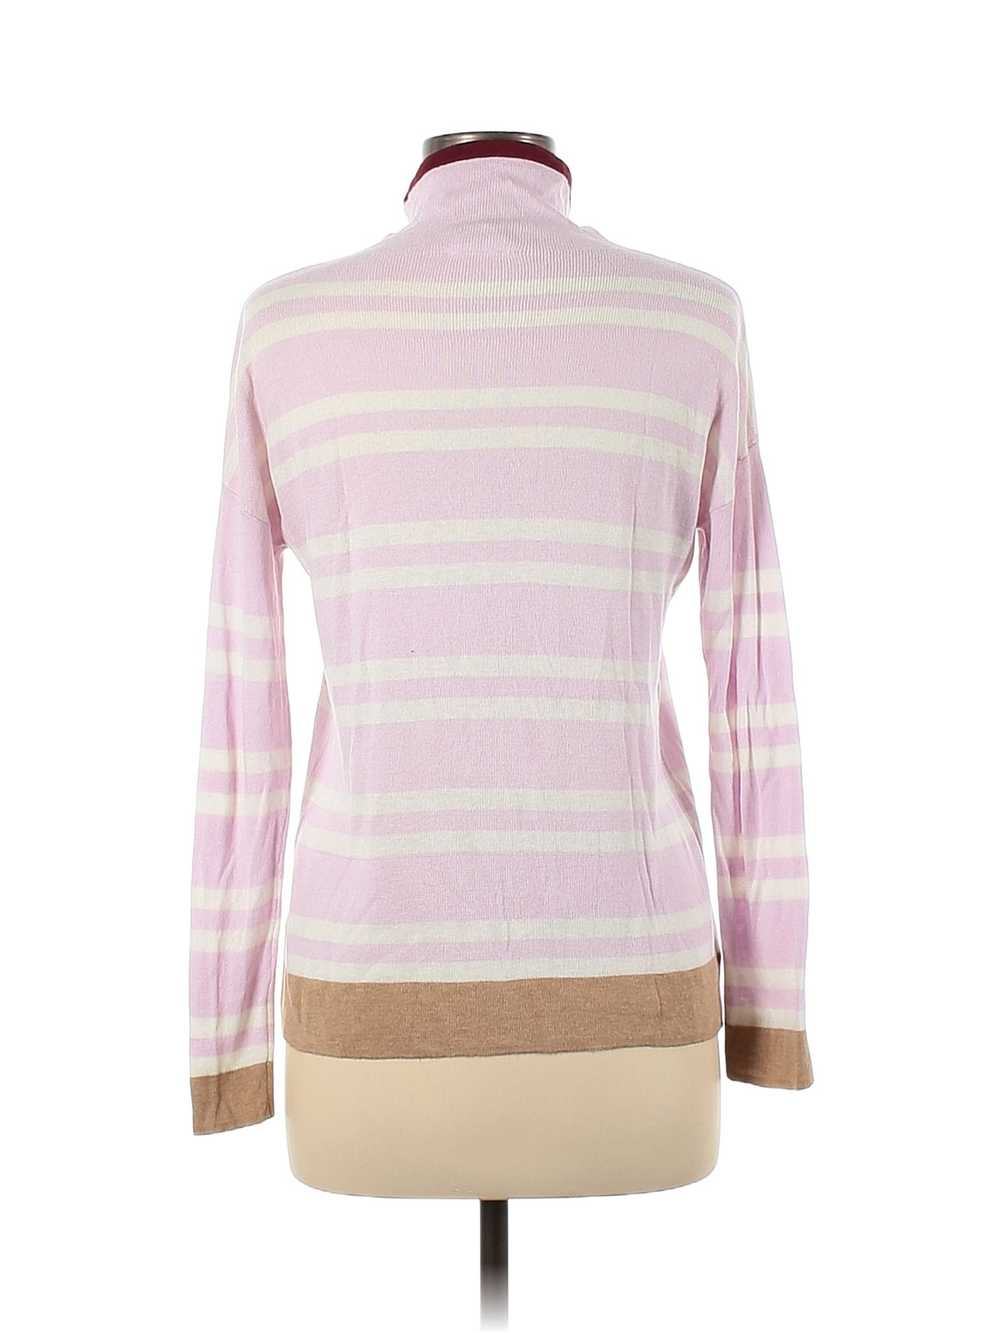 Lou & Grey Women Pink Turtleneck Sweater XS - image 2